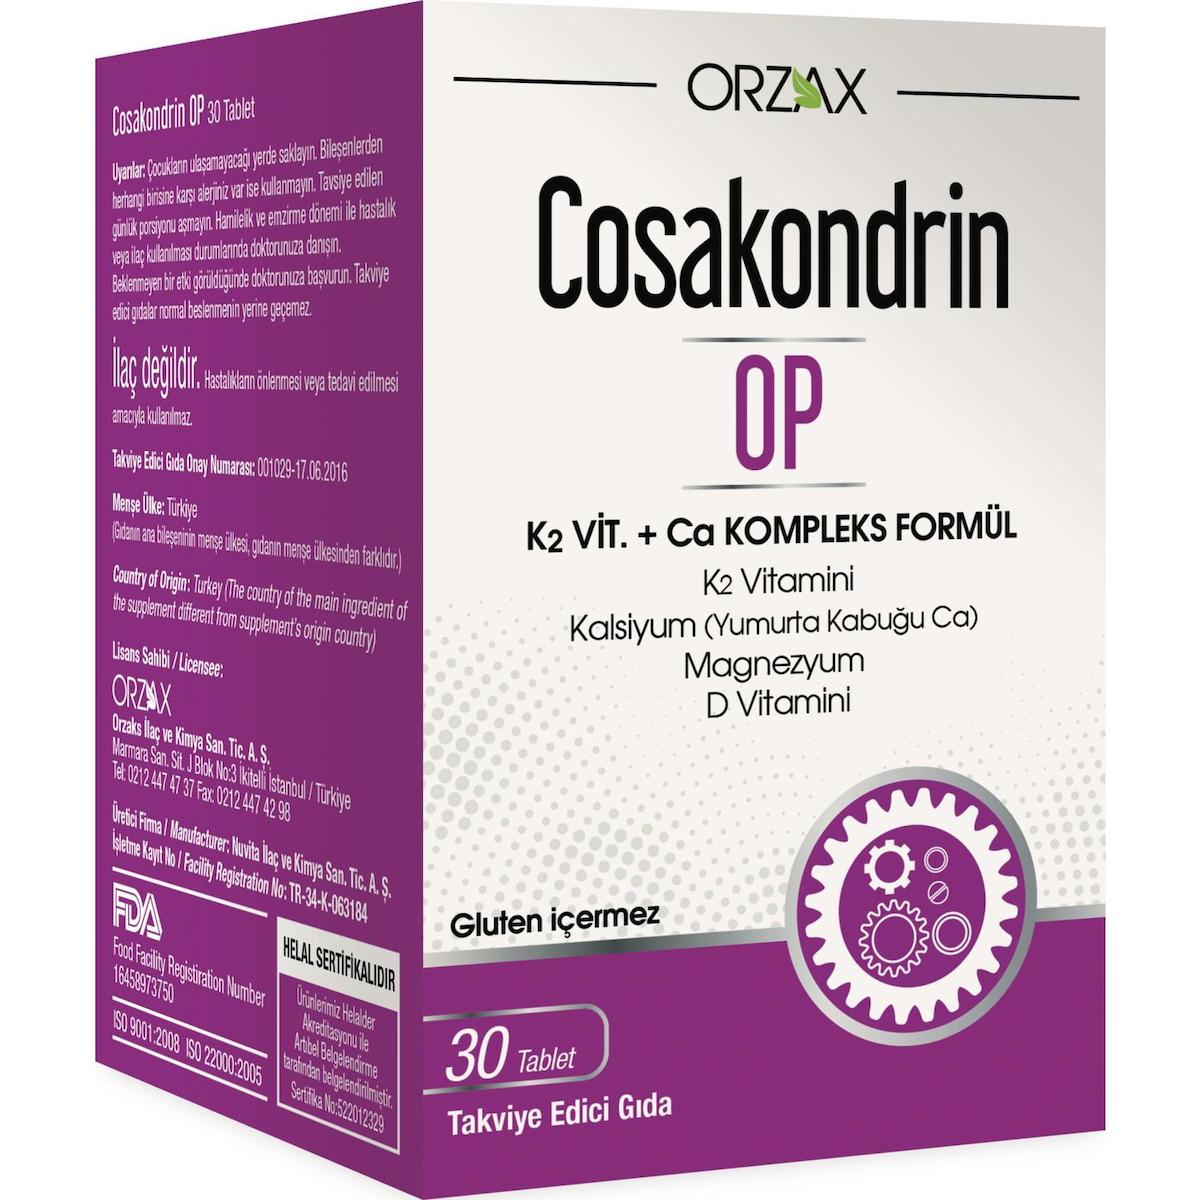 Ocean Cosakondrin-Op Sade Unisex Vitamin 30 Tablet